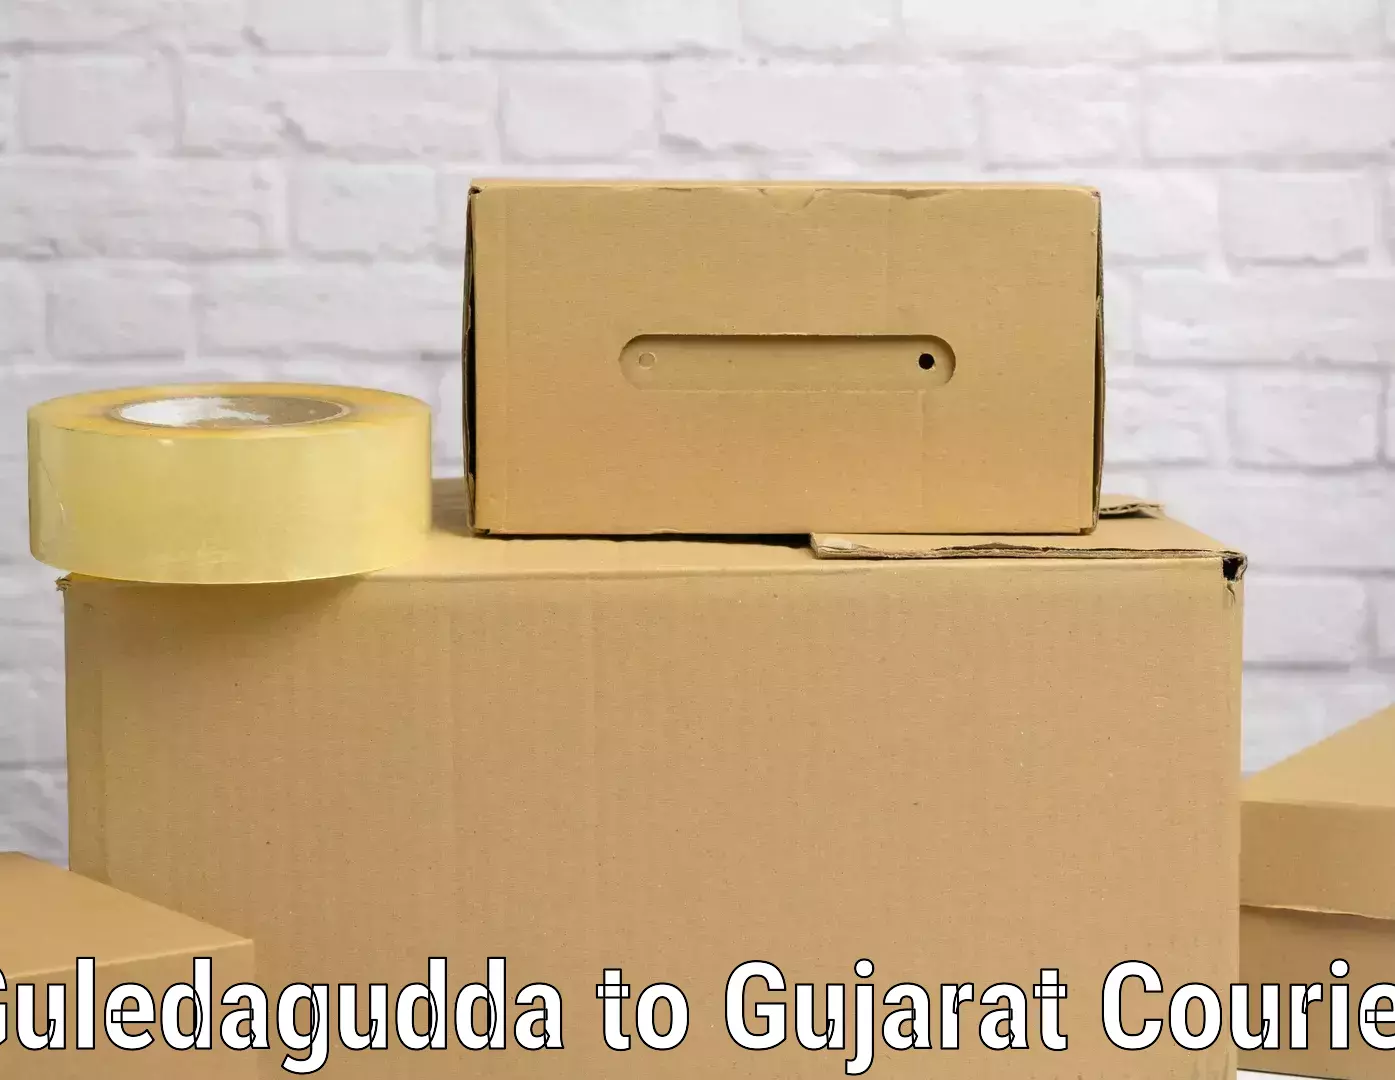 Luggage shipment processing Guledagudda to Gujarat